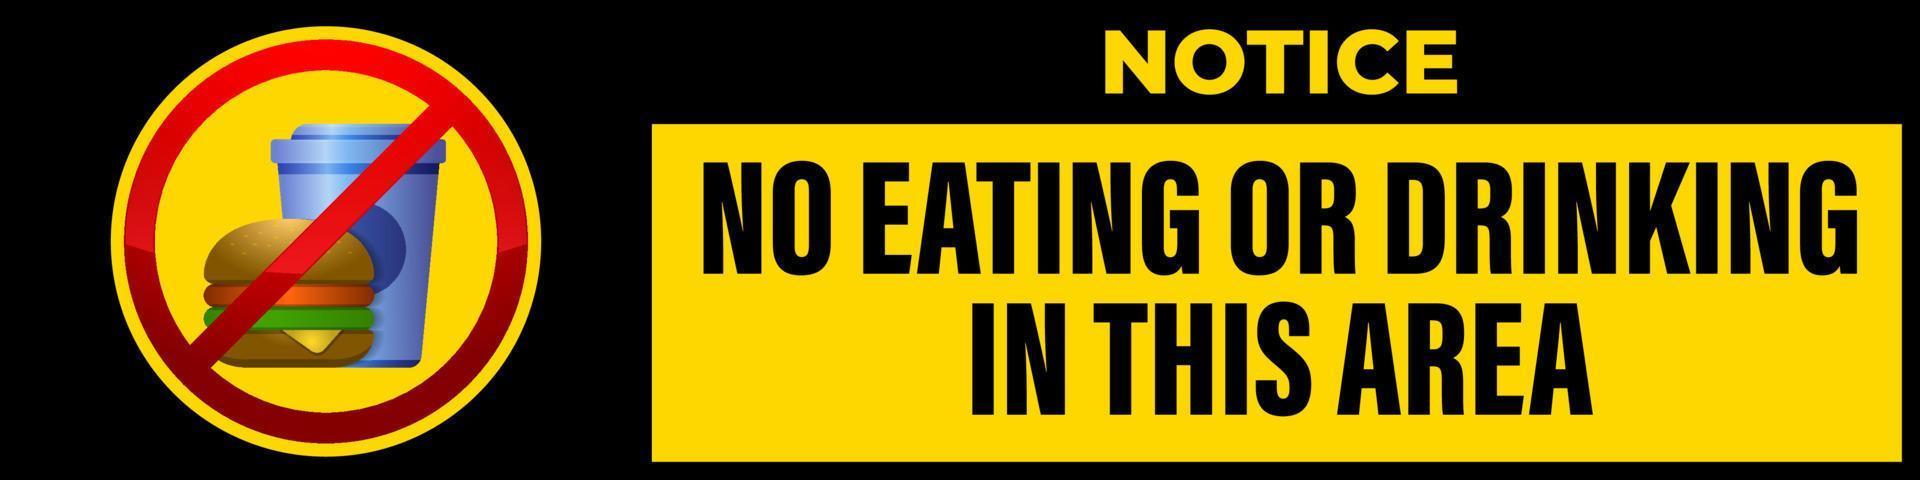 nessun cibo o bevanda consentito segno disegno vettoriale, modello di avvertimento sul divieto di mangiare o bere in quest'area adesivo facile da stampare vettore